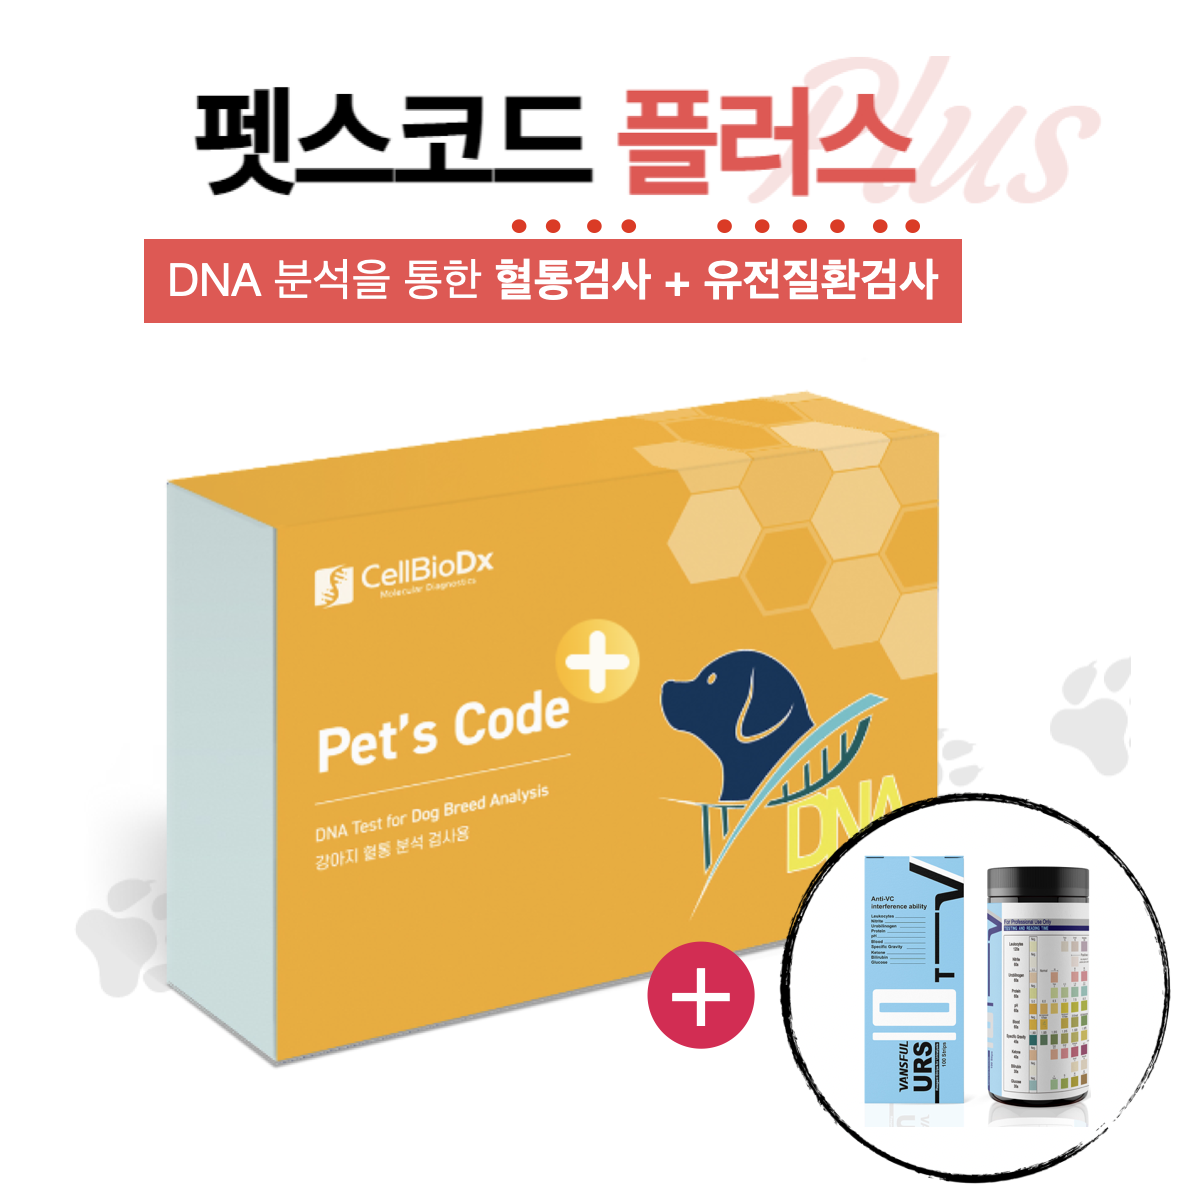 Pet's CODE PLUS (혈통 및 유전질환검사 키트)